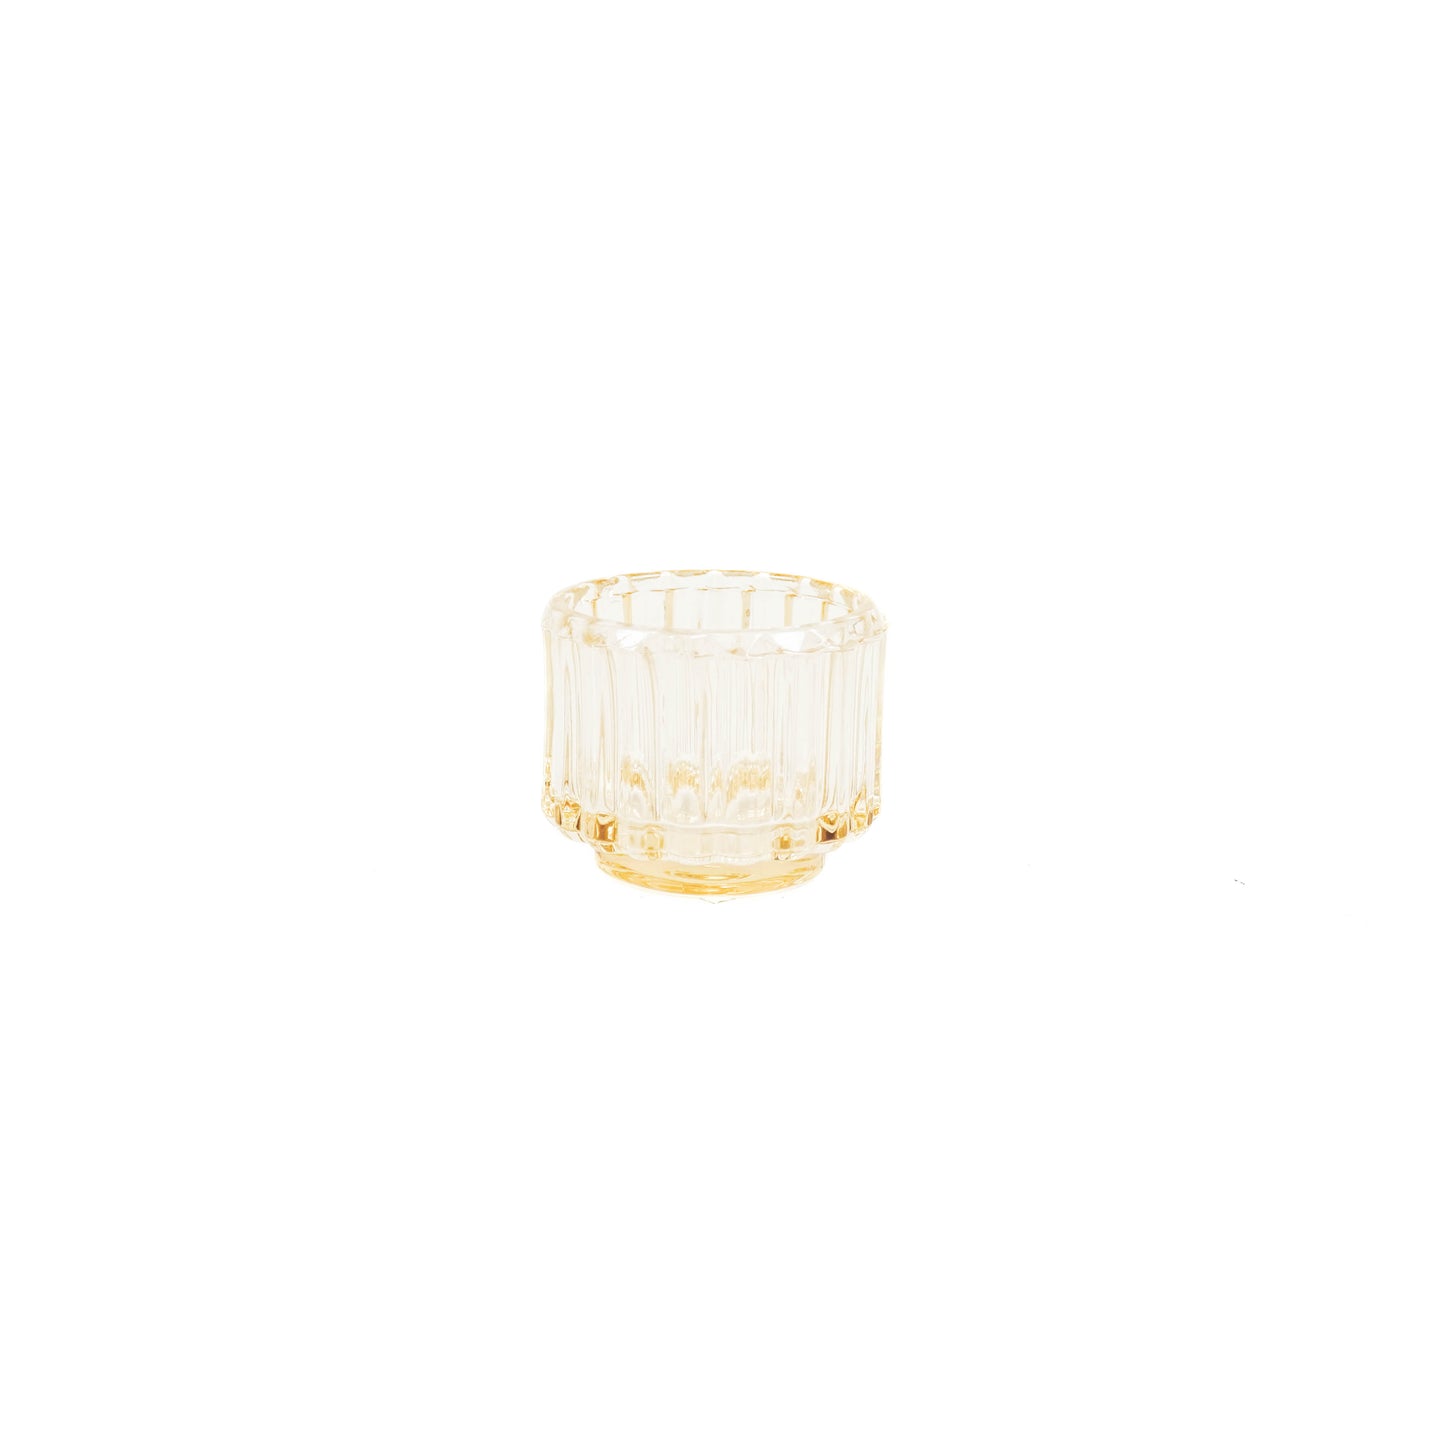 HV Glass Tealightholder Candleholder - Amber - 8x6.5cm